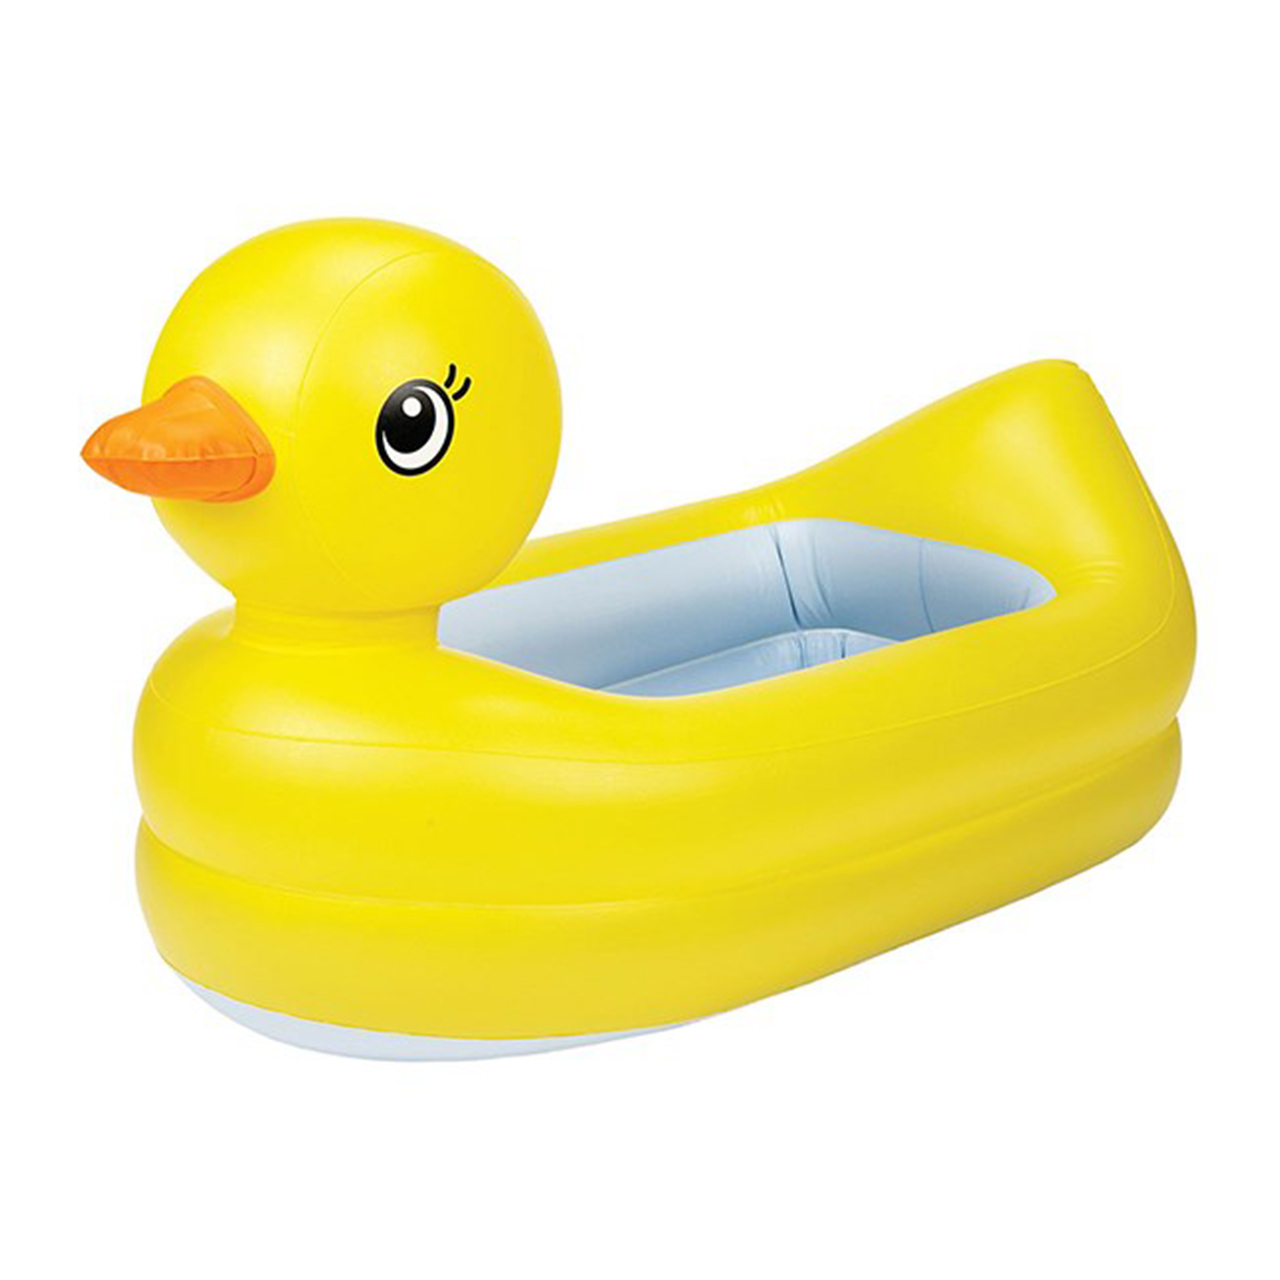 وان حمام کودک مانچکین مدل Duck Tub